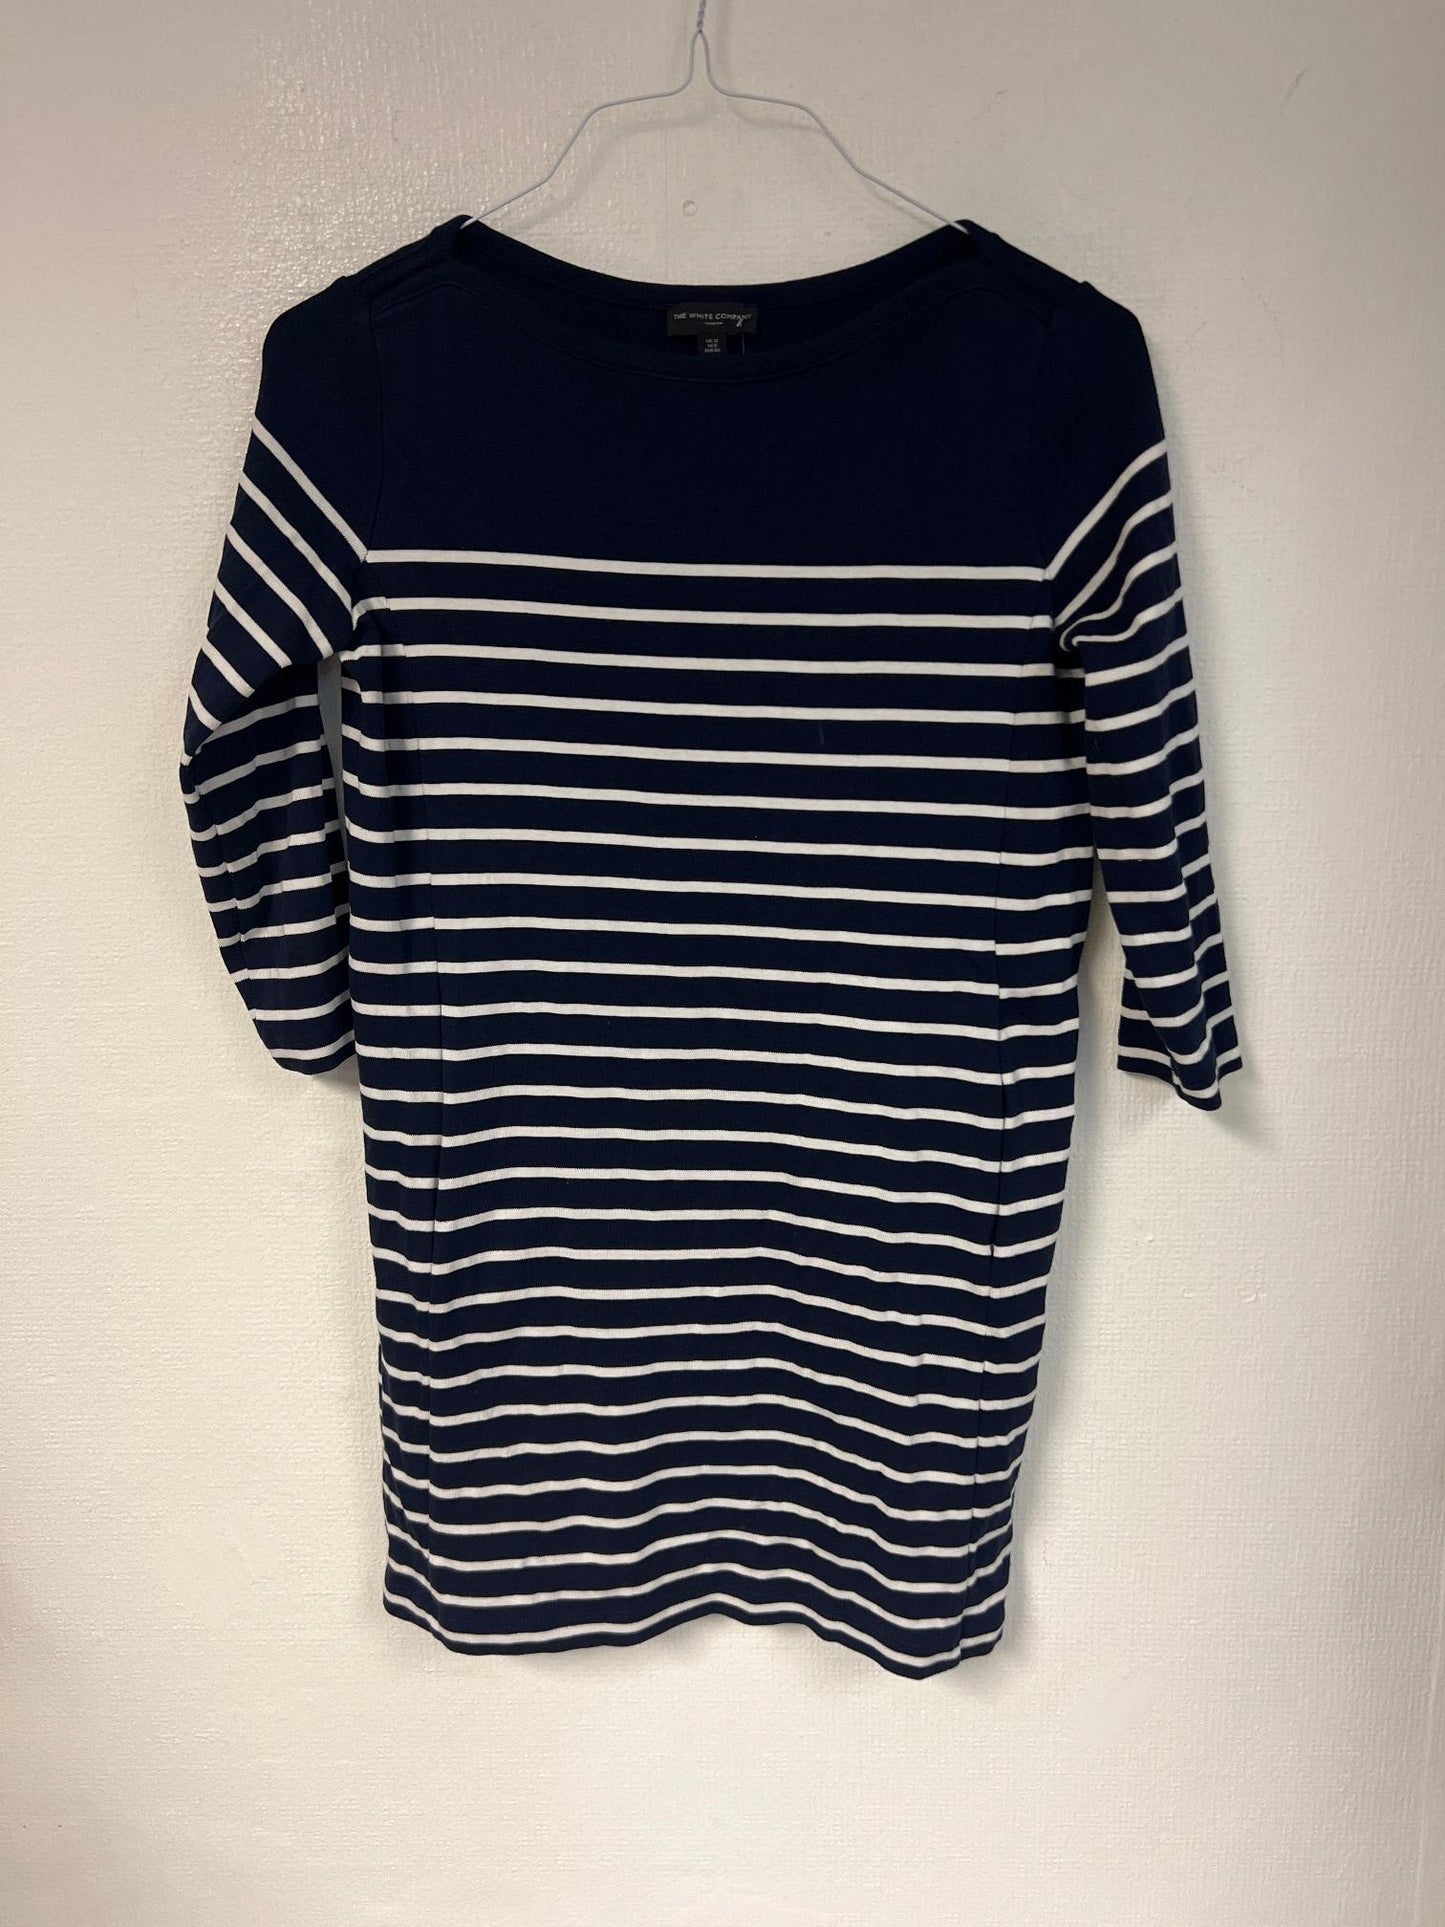 Boat neck striped mini dress, Size 12 - Damaged Item Sale